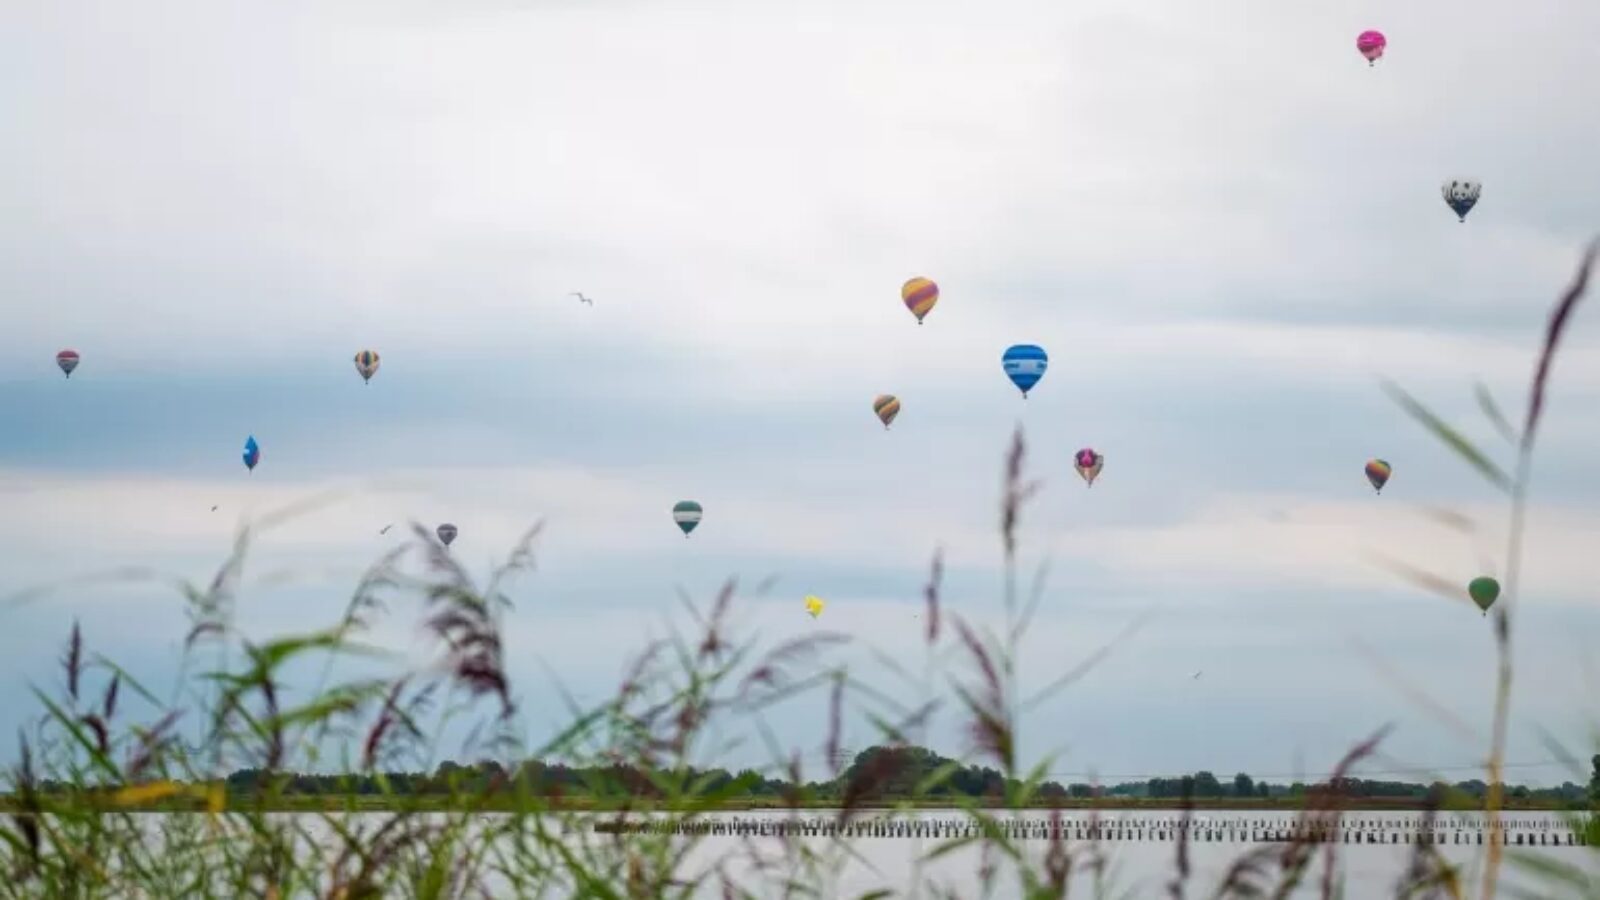 Landelijke primeur voor luchtballonnenspektakel in Meerstad